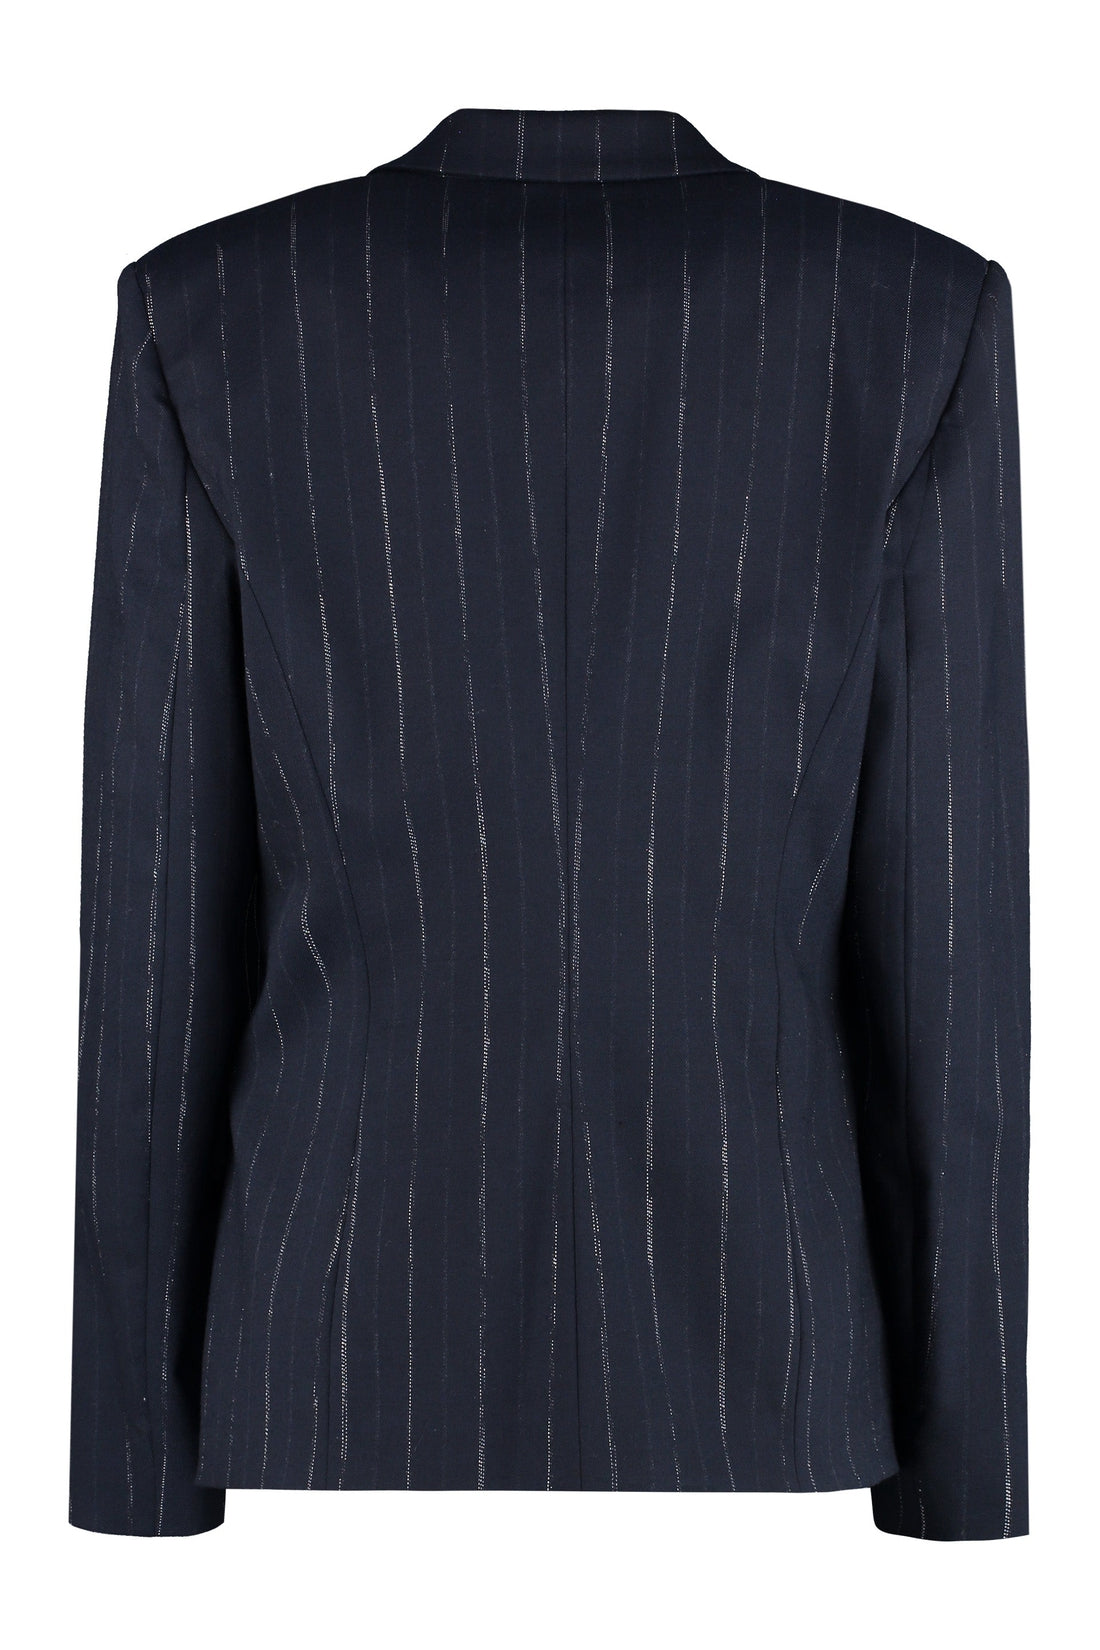 Genny-OUTLET-SALE-Wool-blend pinstripe blazer-ARCHIVIST